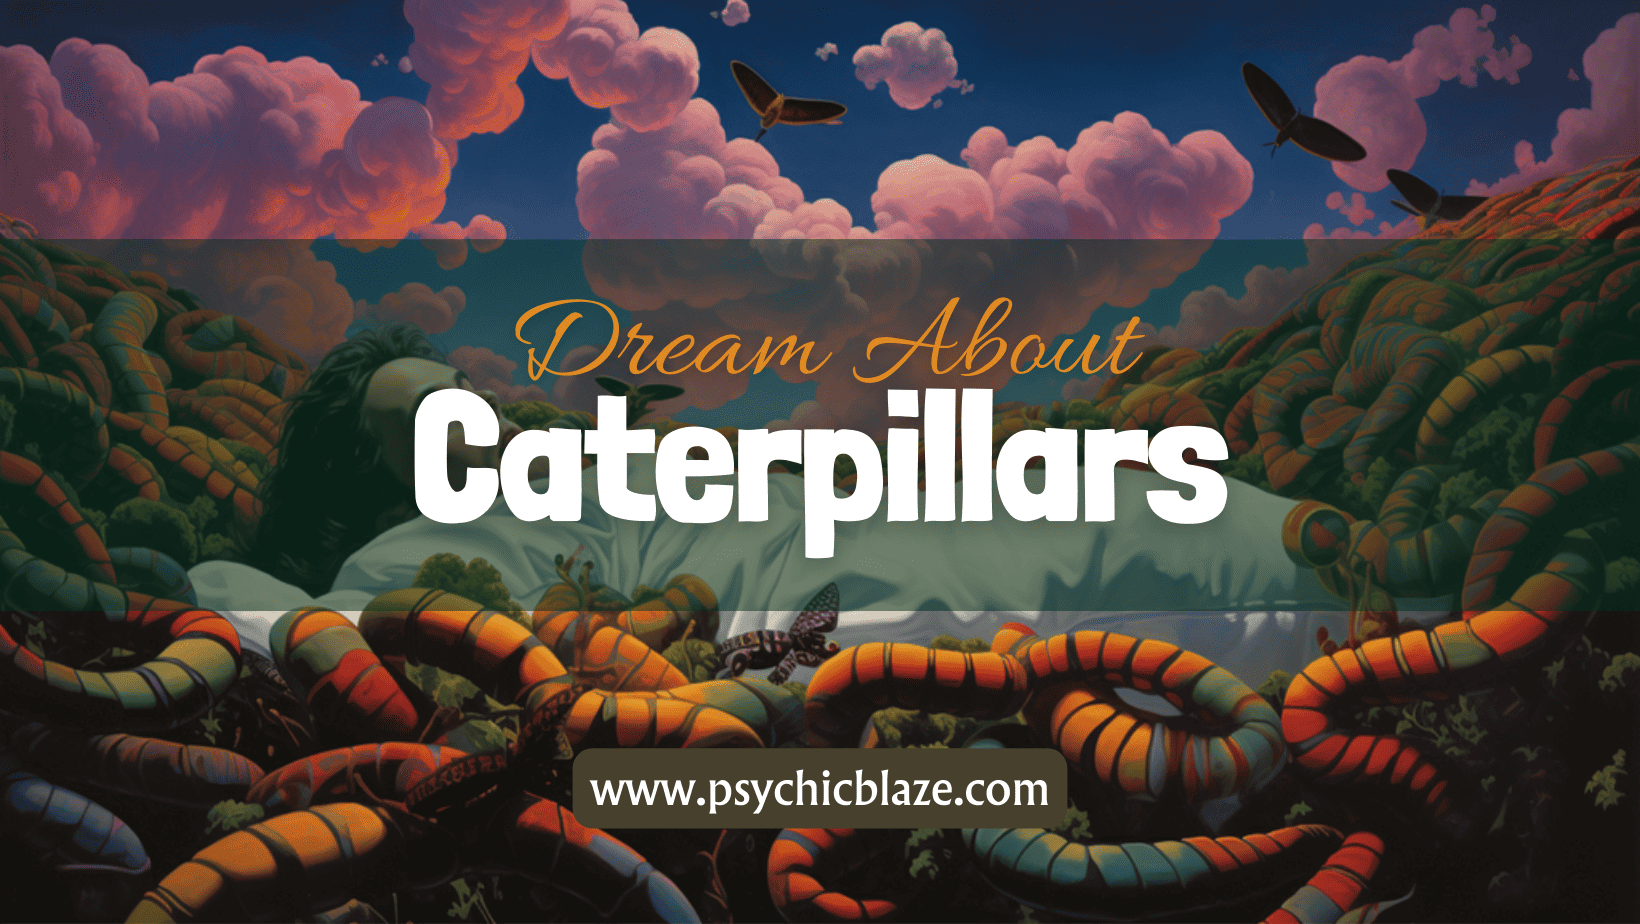 Dream about Caterpillar